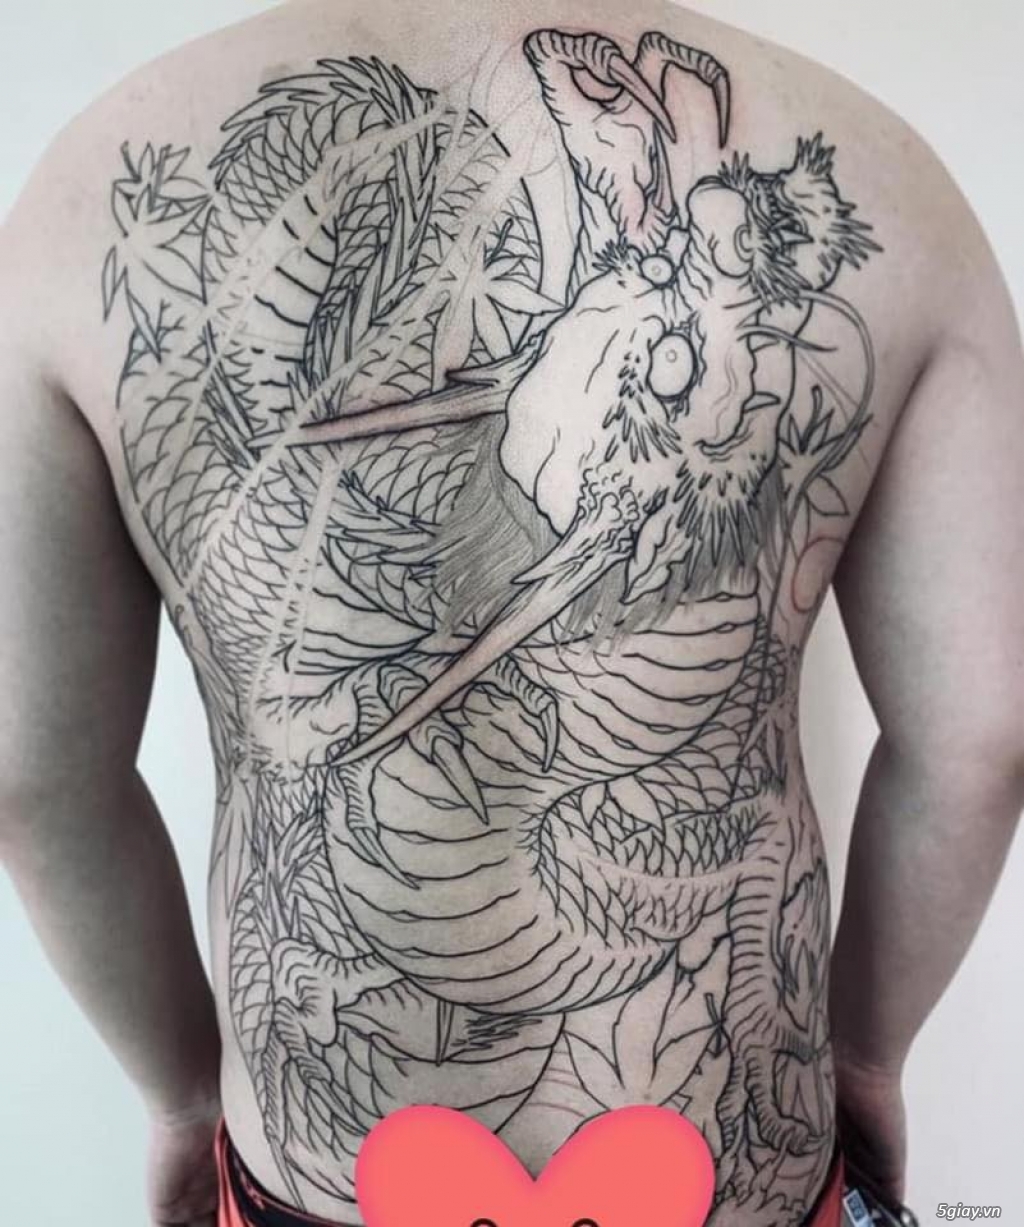 Bình an vô sự ❤️ - Thế Giới Tattoo - Xăm Hình Nghệ Thuật | Facebook